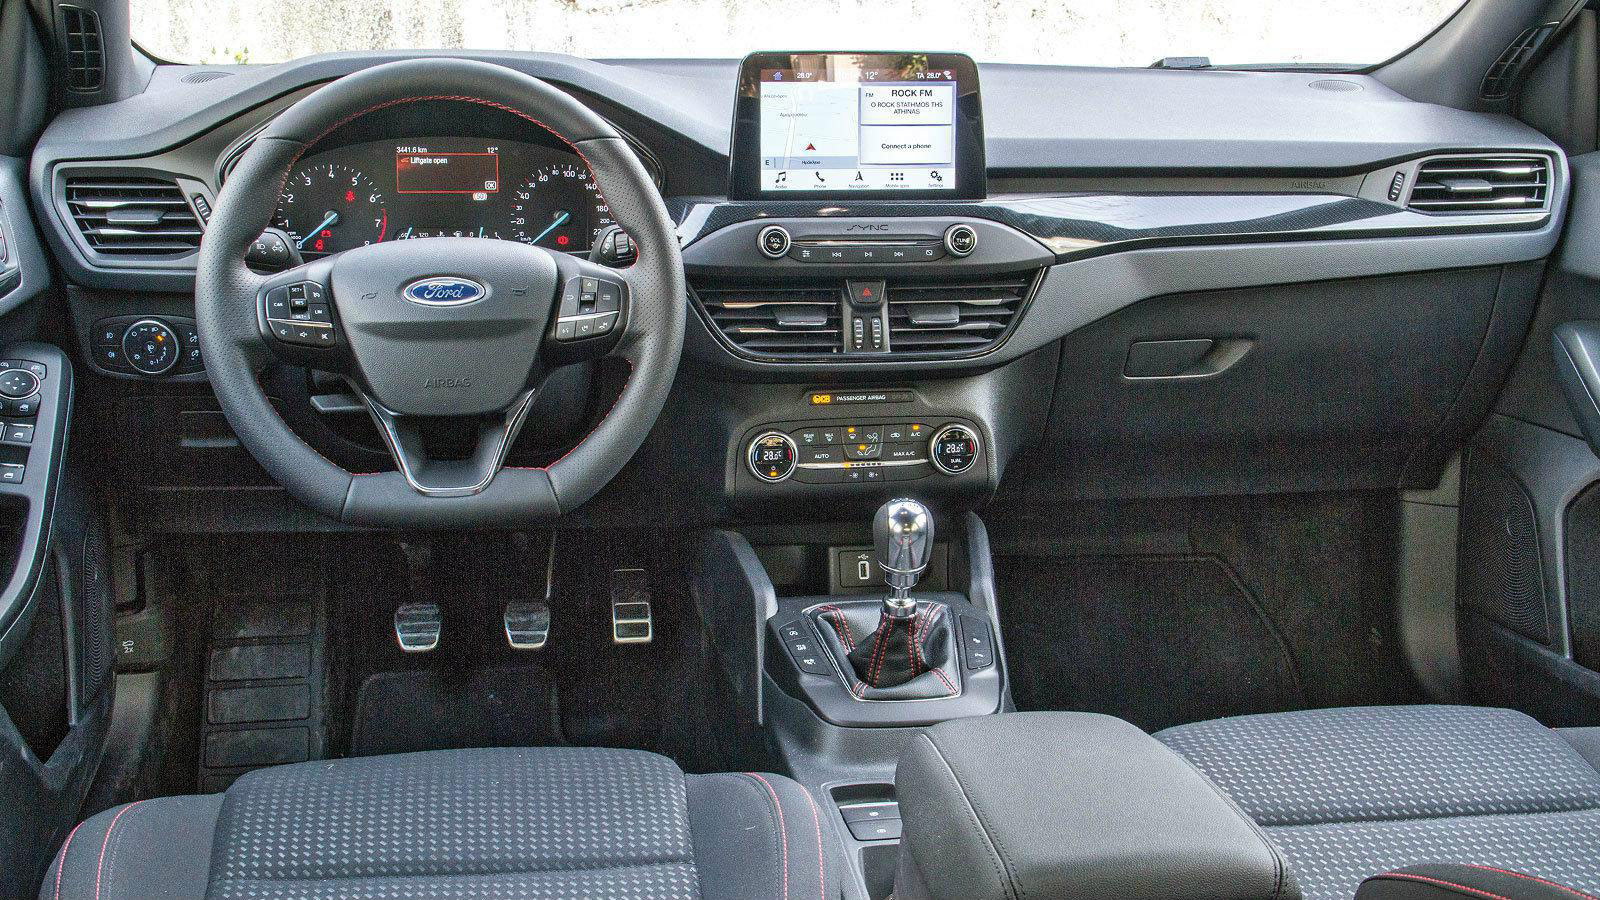 Ford Focus: Το πιο άνετο συνολικά για τους πίσω επιβάτες